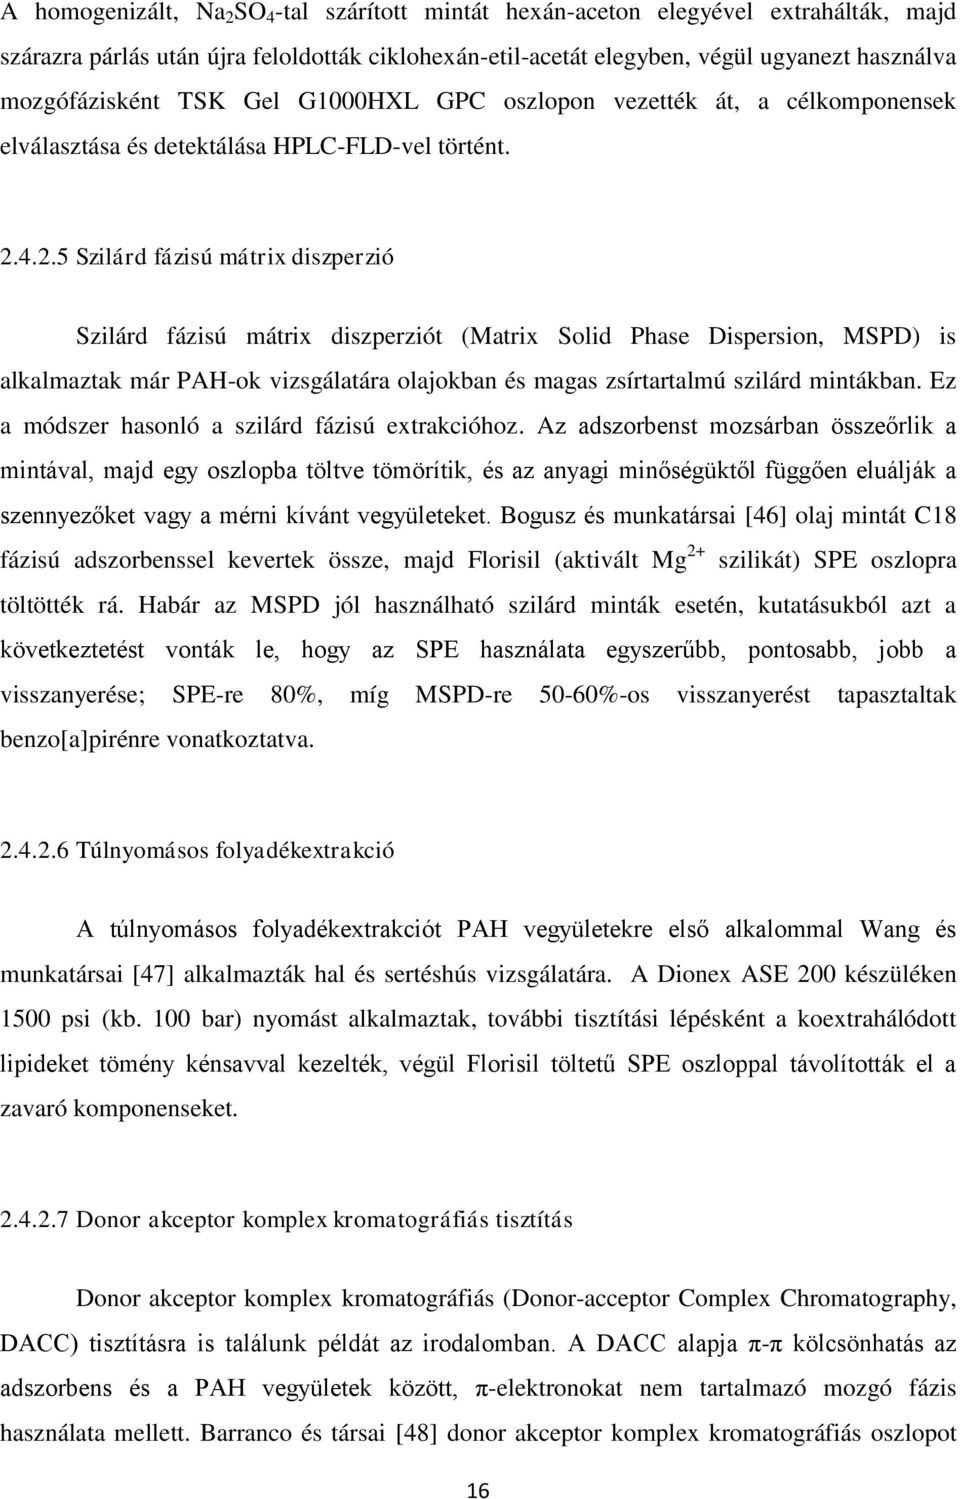 4.2.5 Szilárd fázisú mátrix diszperzió Szilárd fázisú mátrix diszperziót (Matrix Solid Phase Dispersion, MSPD) is alkalmaztak már PAH-ok vizsgálatára olajokban és magas zsírtartalmú szilárd mintákban.